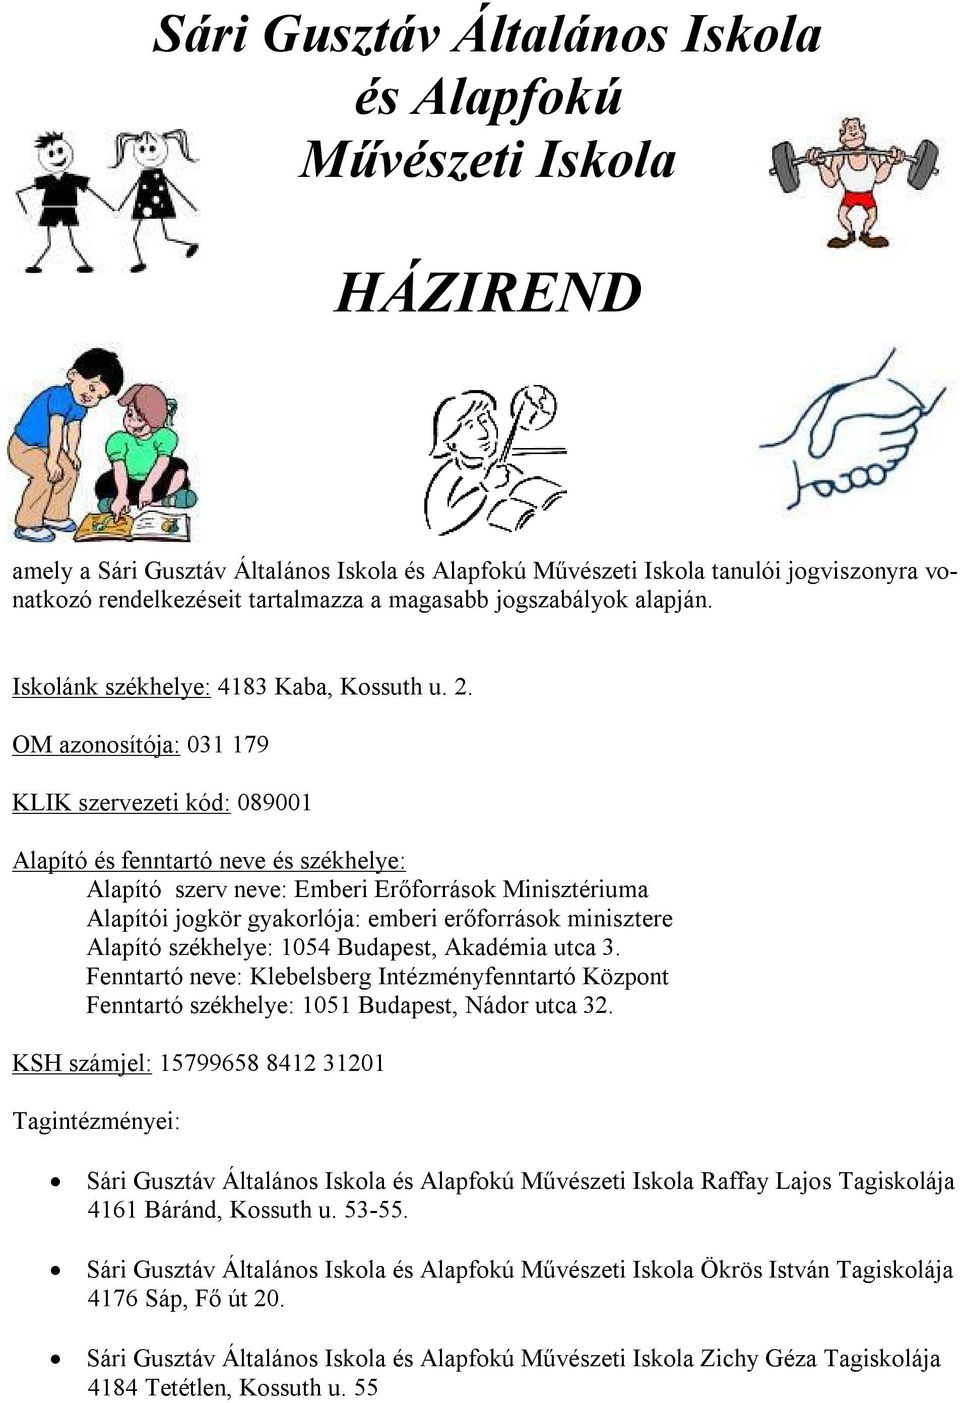 Sári Gusztáv Általános Iskola és Alapfokú Művészeti Iskola HÁZIREND - PDF  Free Download